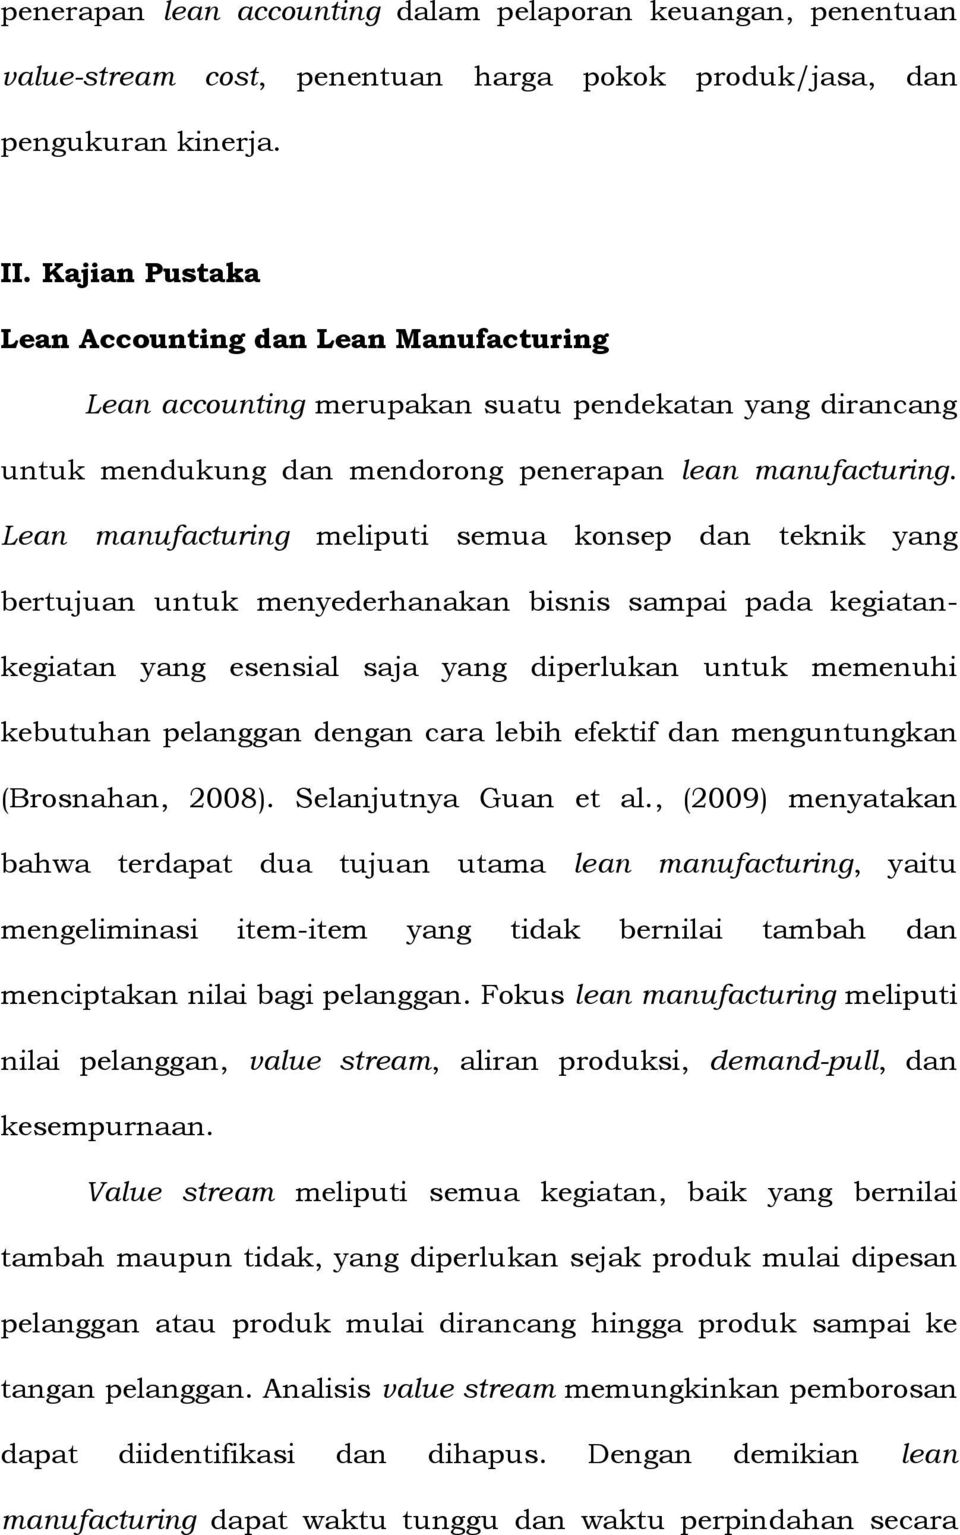 Lean manufacturing meliputi semua konsep dan teknik yang bertujuan untuk menyederhanakan bisnis sampai pada kegiatankegiatan yang esensial saja yang diperlukan untuk memenuhi kebutuhan pelanggan